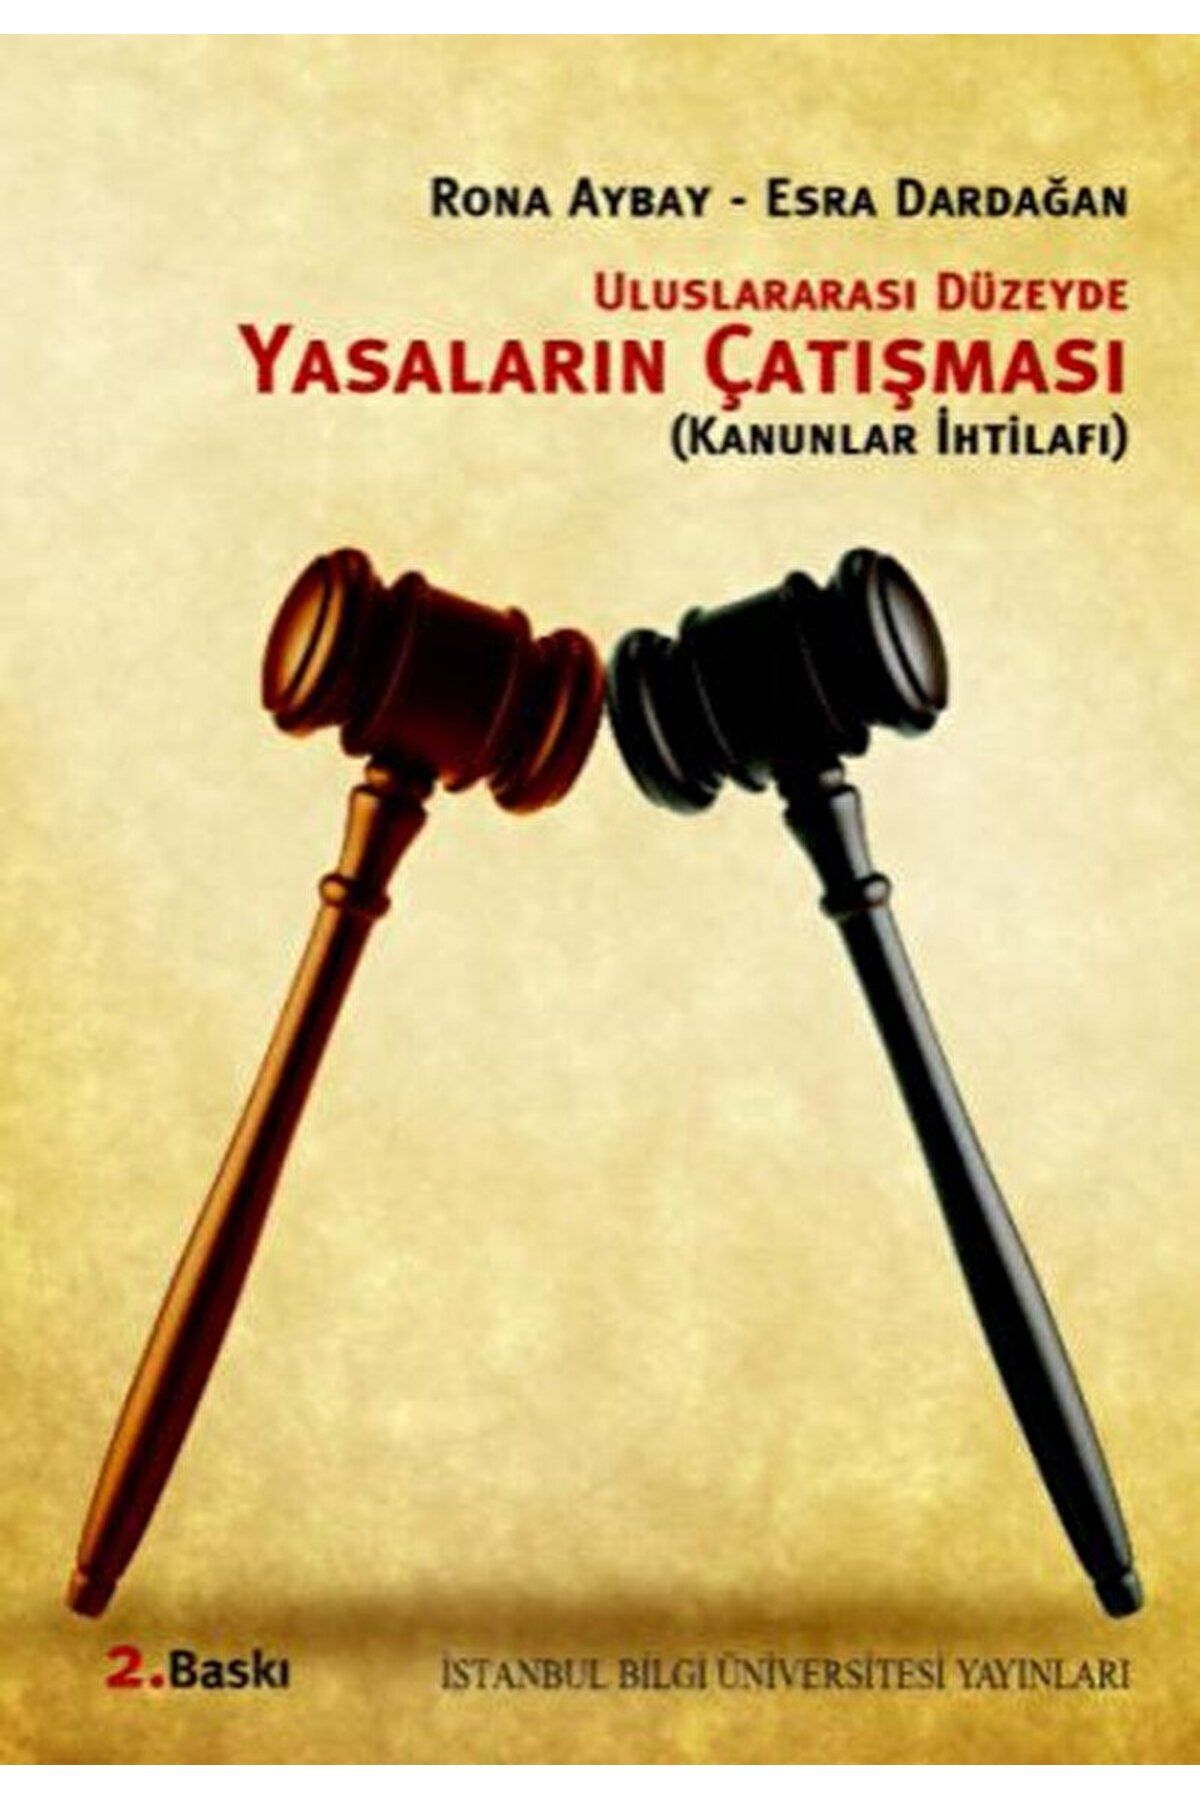 İstanbul Bilgi Üniversitesi Yayınları Uluslararası Düzeyde Yasaların Çatışması Kanunlar İhtilafı / 9789756176146